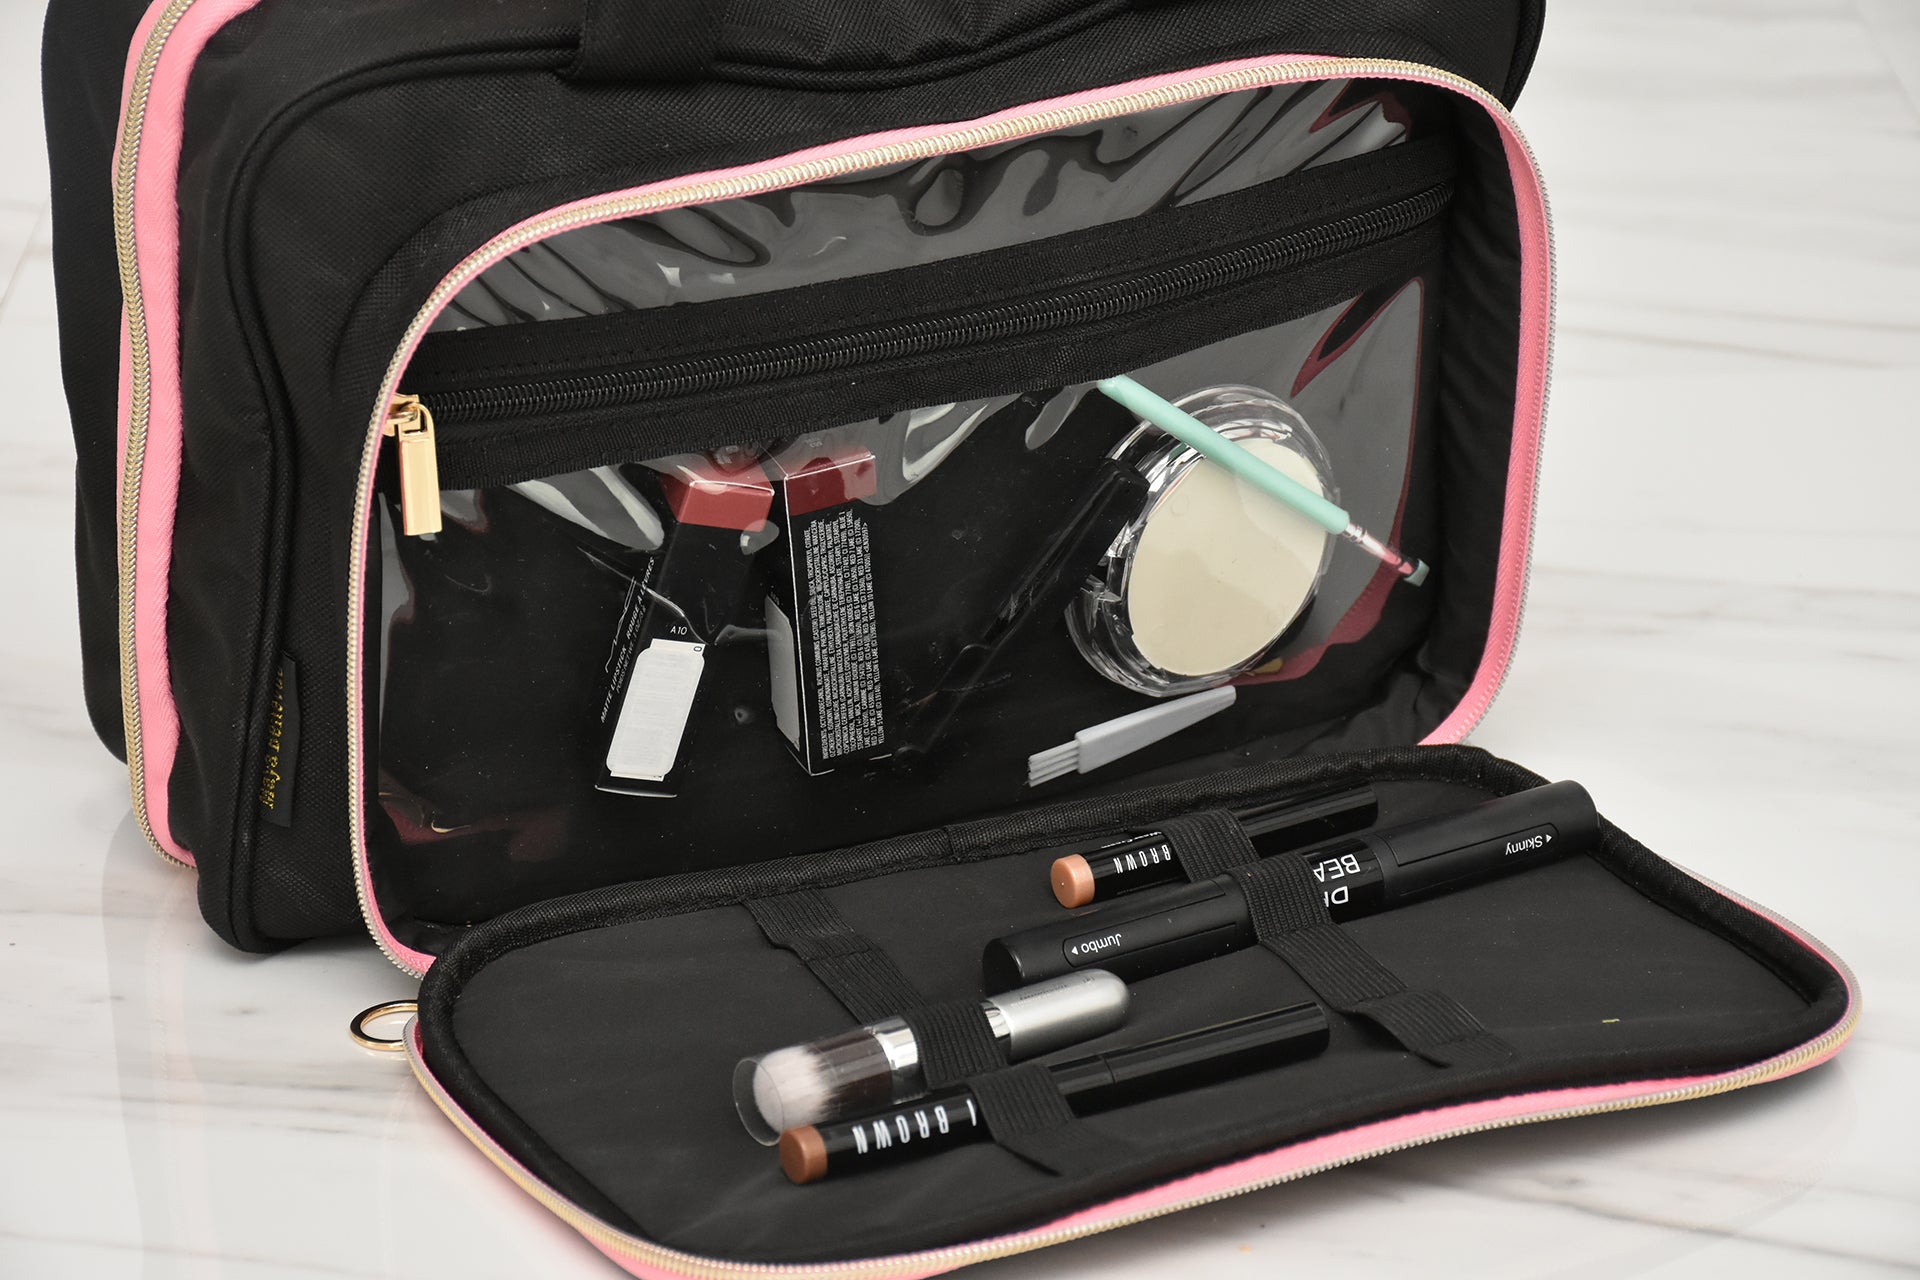 Large Makeup Bag, BAGSMART Double Layer Cosmetic Bag Travel Makeup